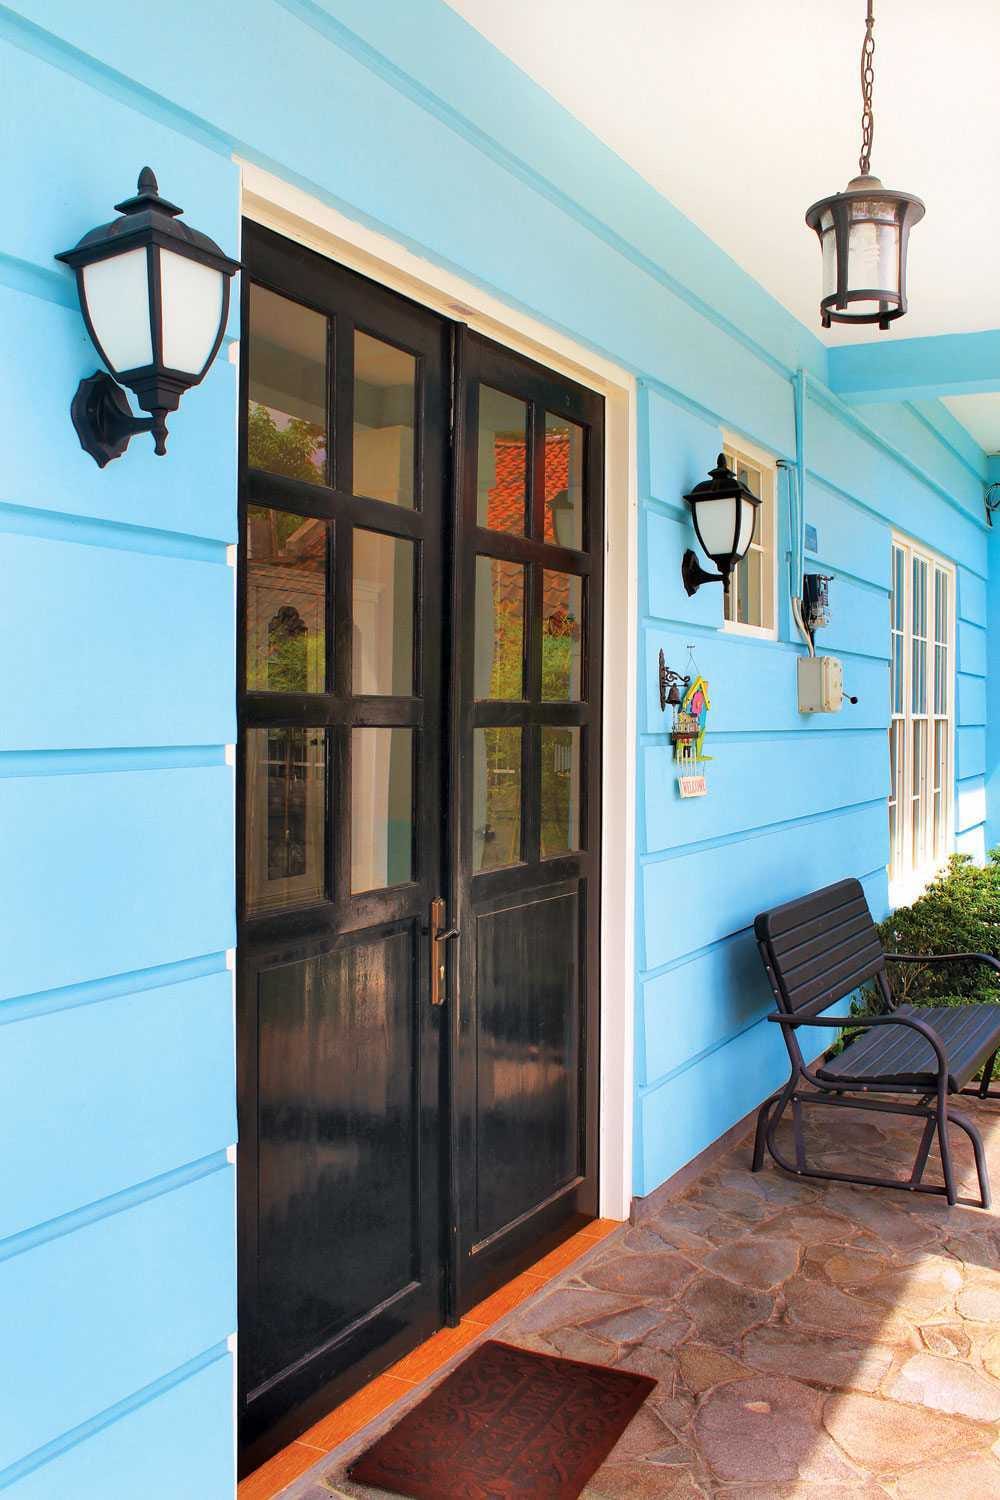  Cat  Rumah  Warna  Biru  Turquoise Deco Desain  Rumah 